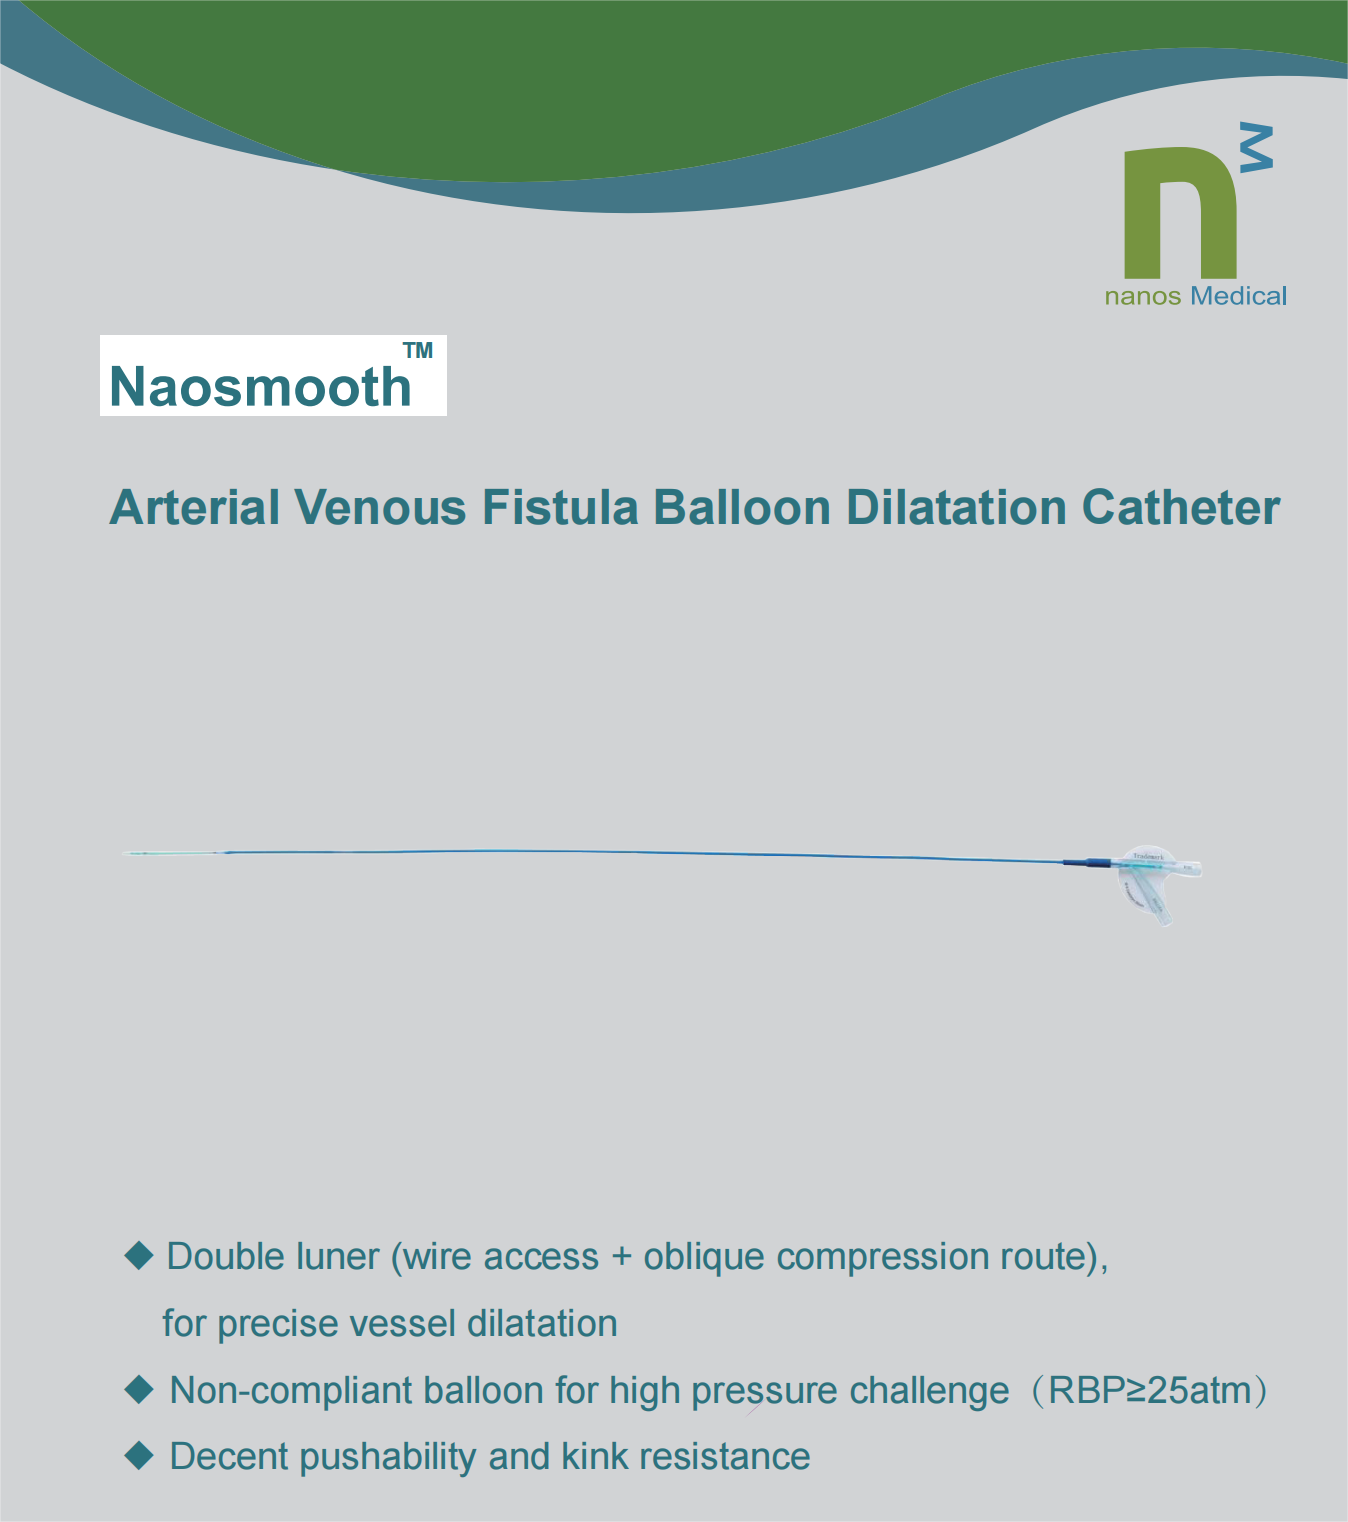 PTA balloon catheter